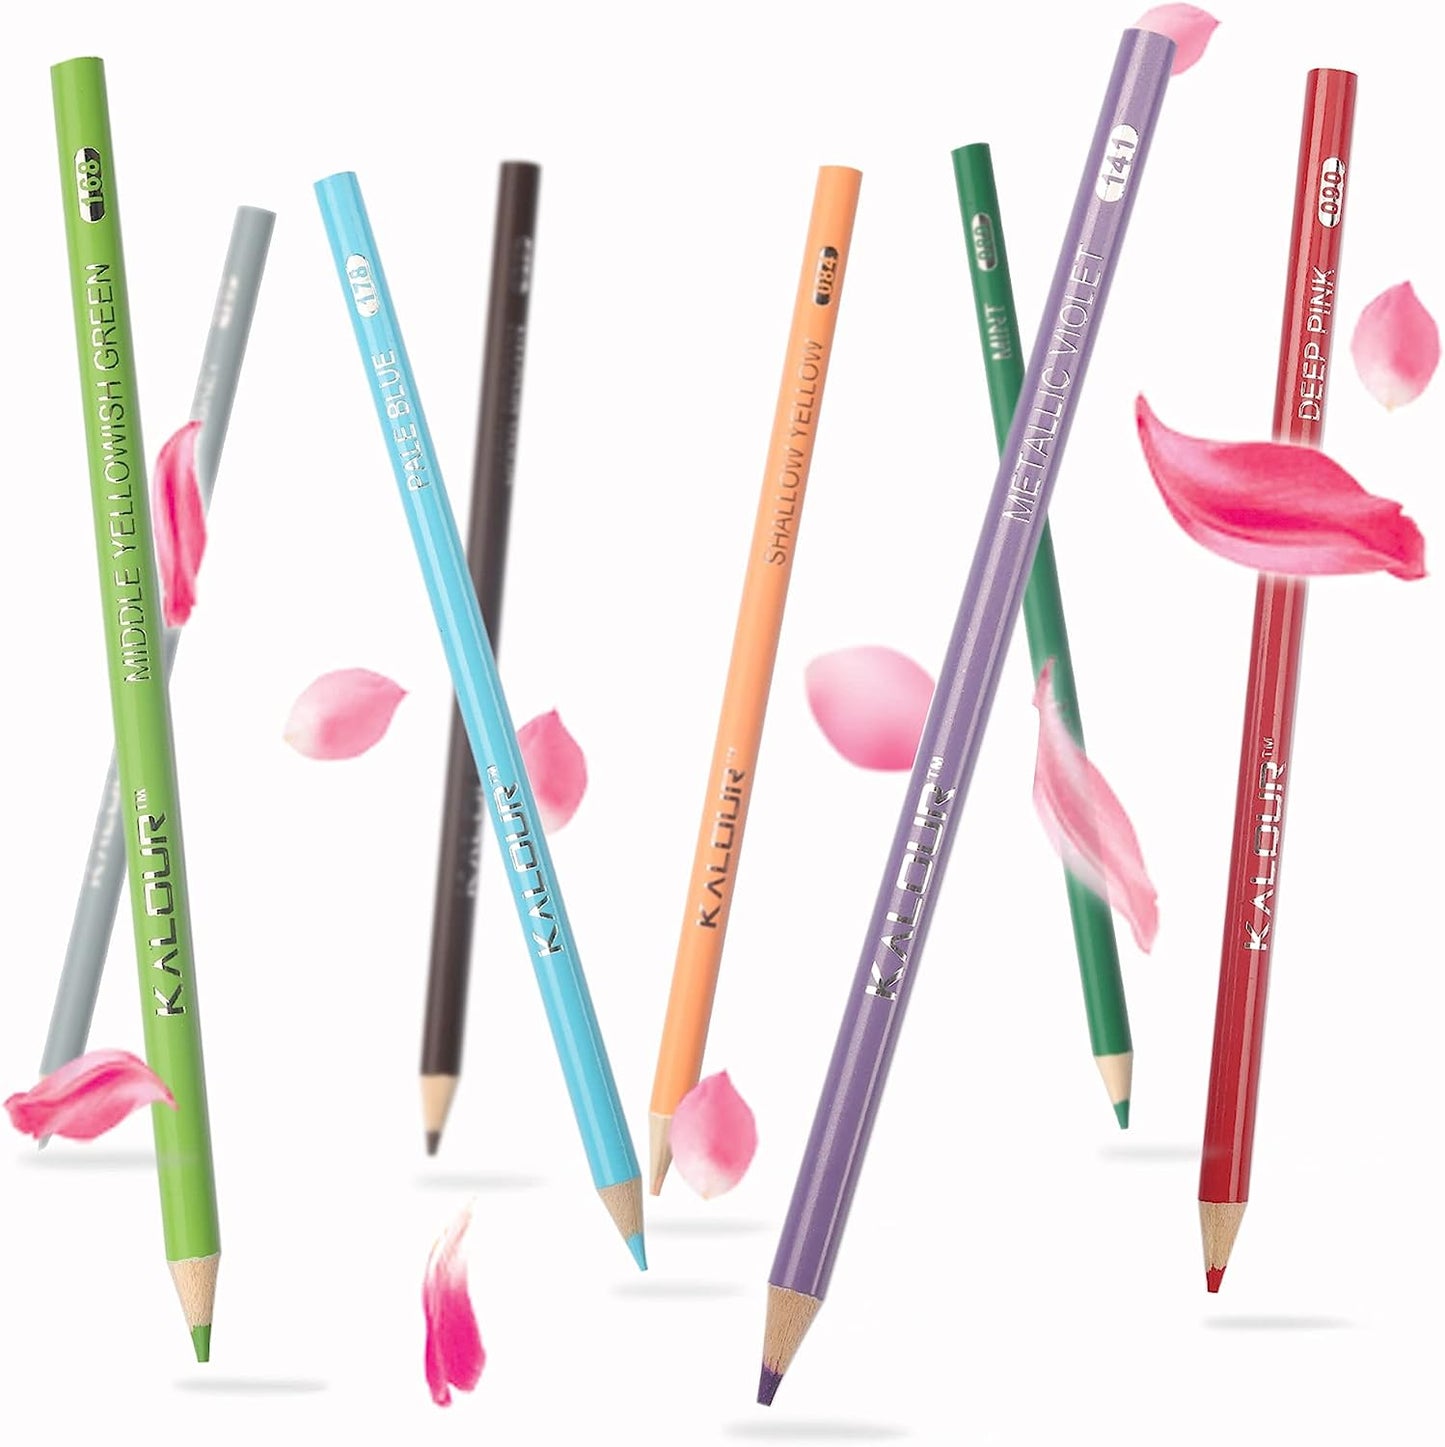 KALOUR Pro Colored Pencils,Set of 520 Colors,Artists Soft Core